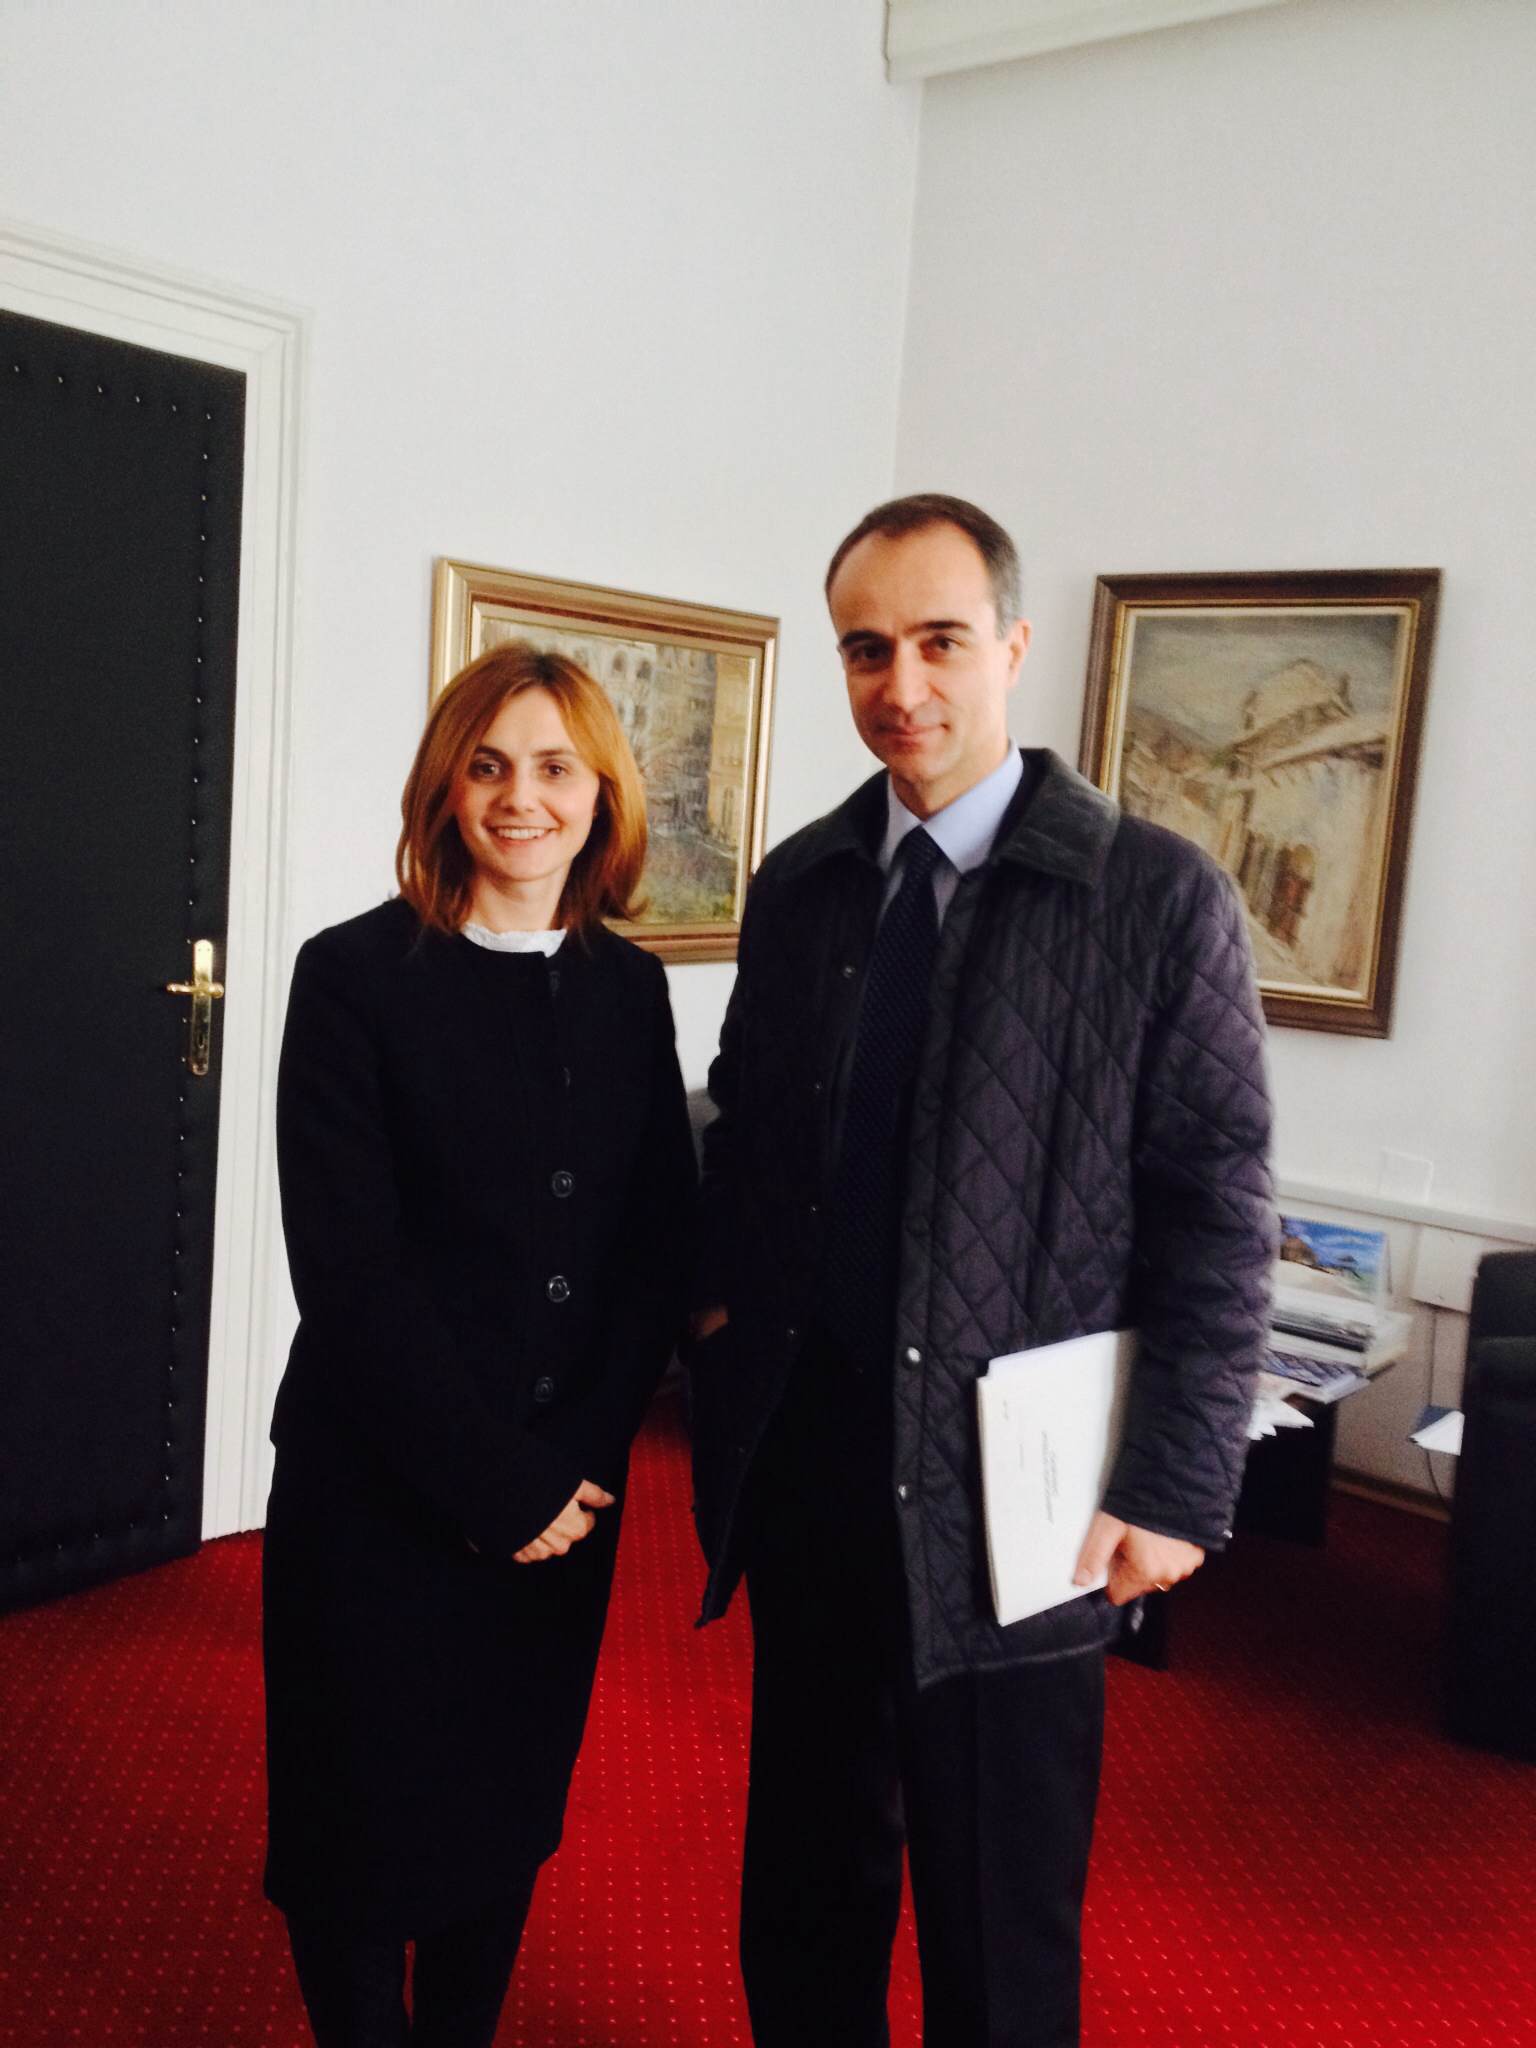 Picture for Zamjenica ministra gđa Ermina Salkičević-Dizdarević na sastanaku s ambasadorom Italije u Bosni i Hercegovini 